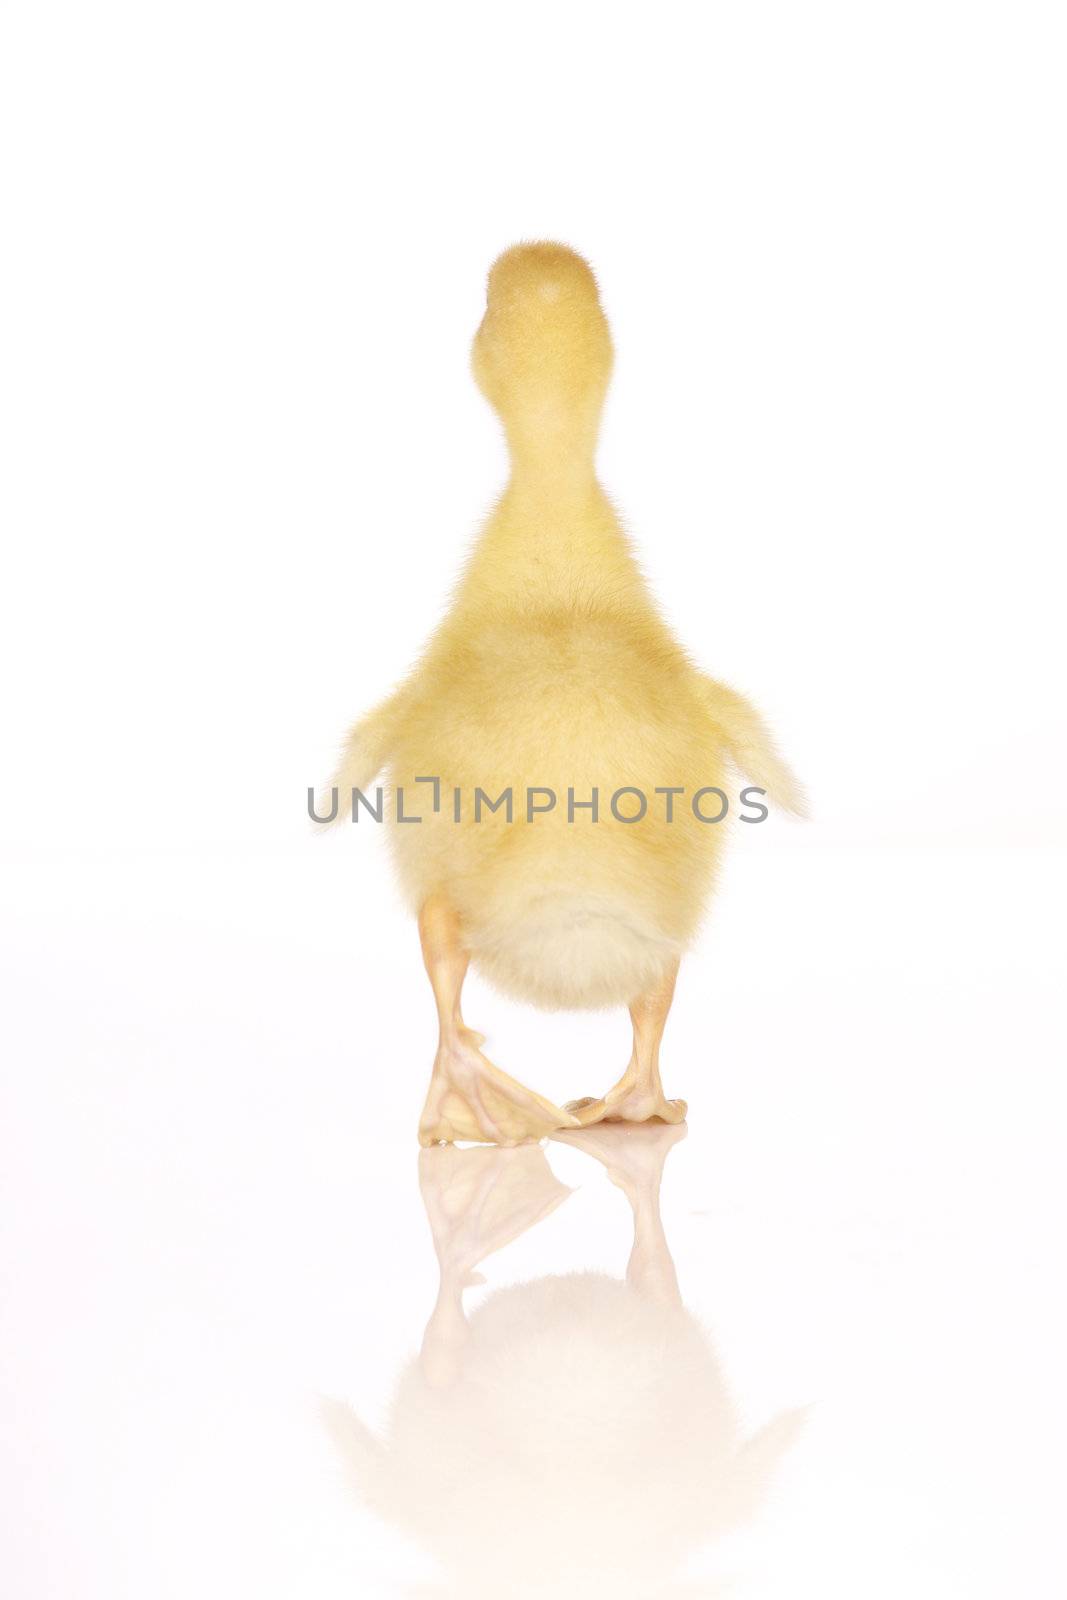 Cute yellow duckling by jarenwicklund